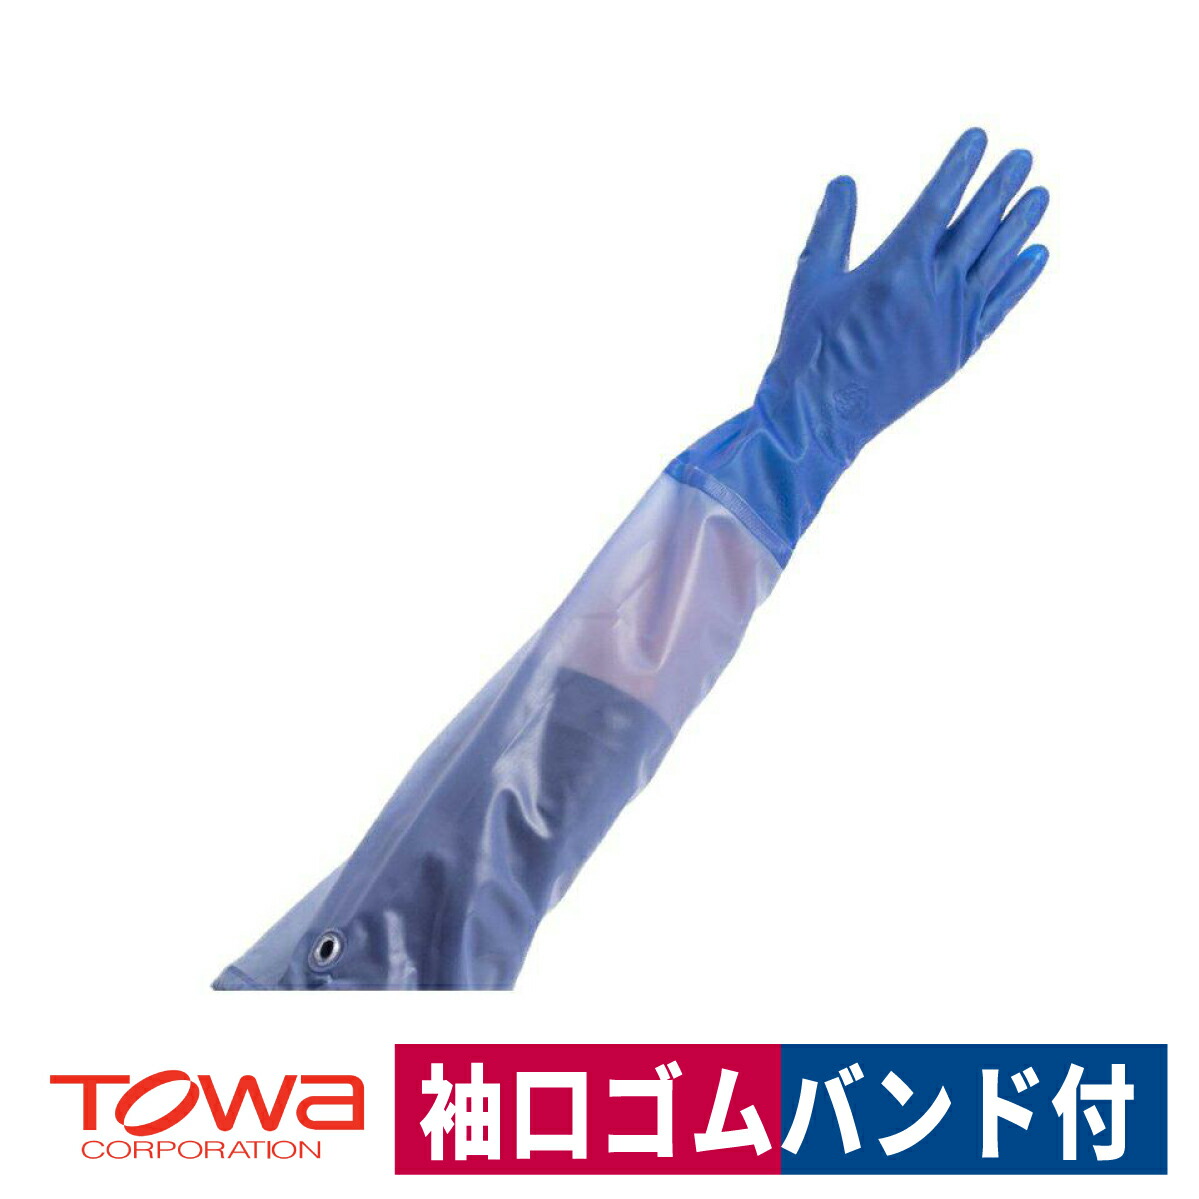 塩化ビニール手袋 ビニスター 腕カバー付き マリン 炊事 大掃除 農業 ブルー S/M/L 東和 778